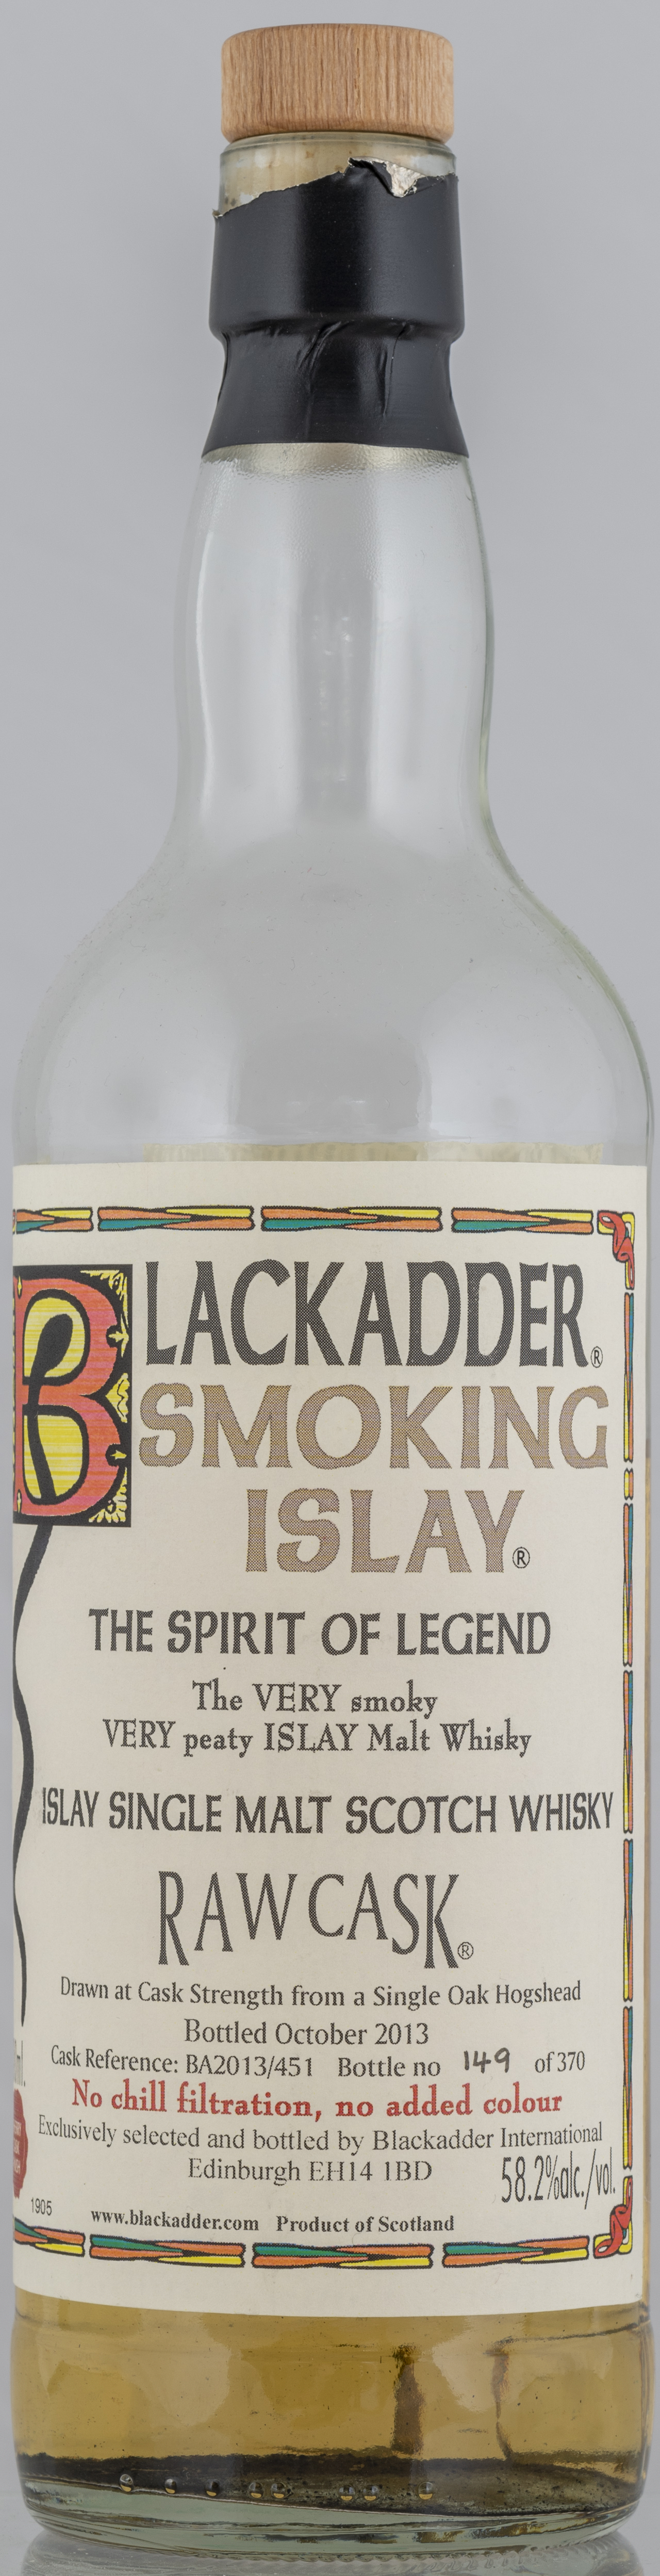 Billede: PHC_7282 - Blackadder Smoking Islay BA2013-451 - bottle front.jpg